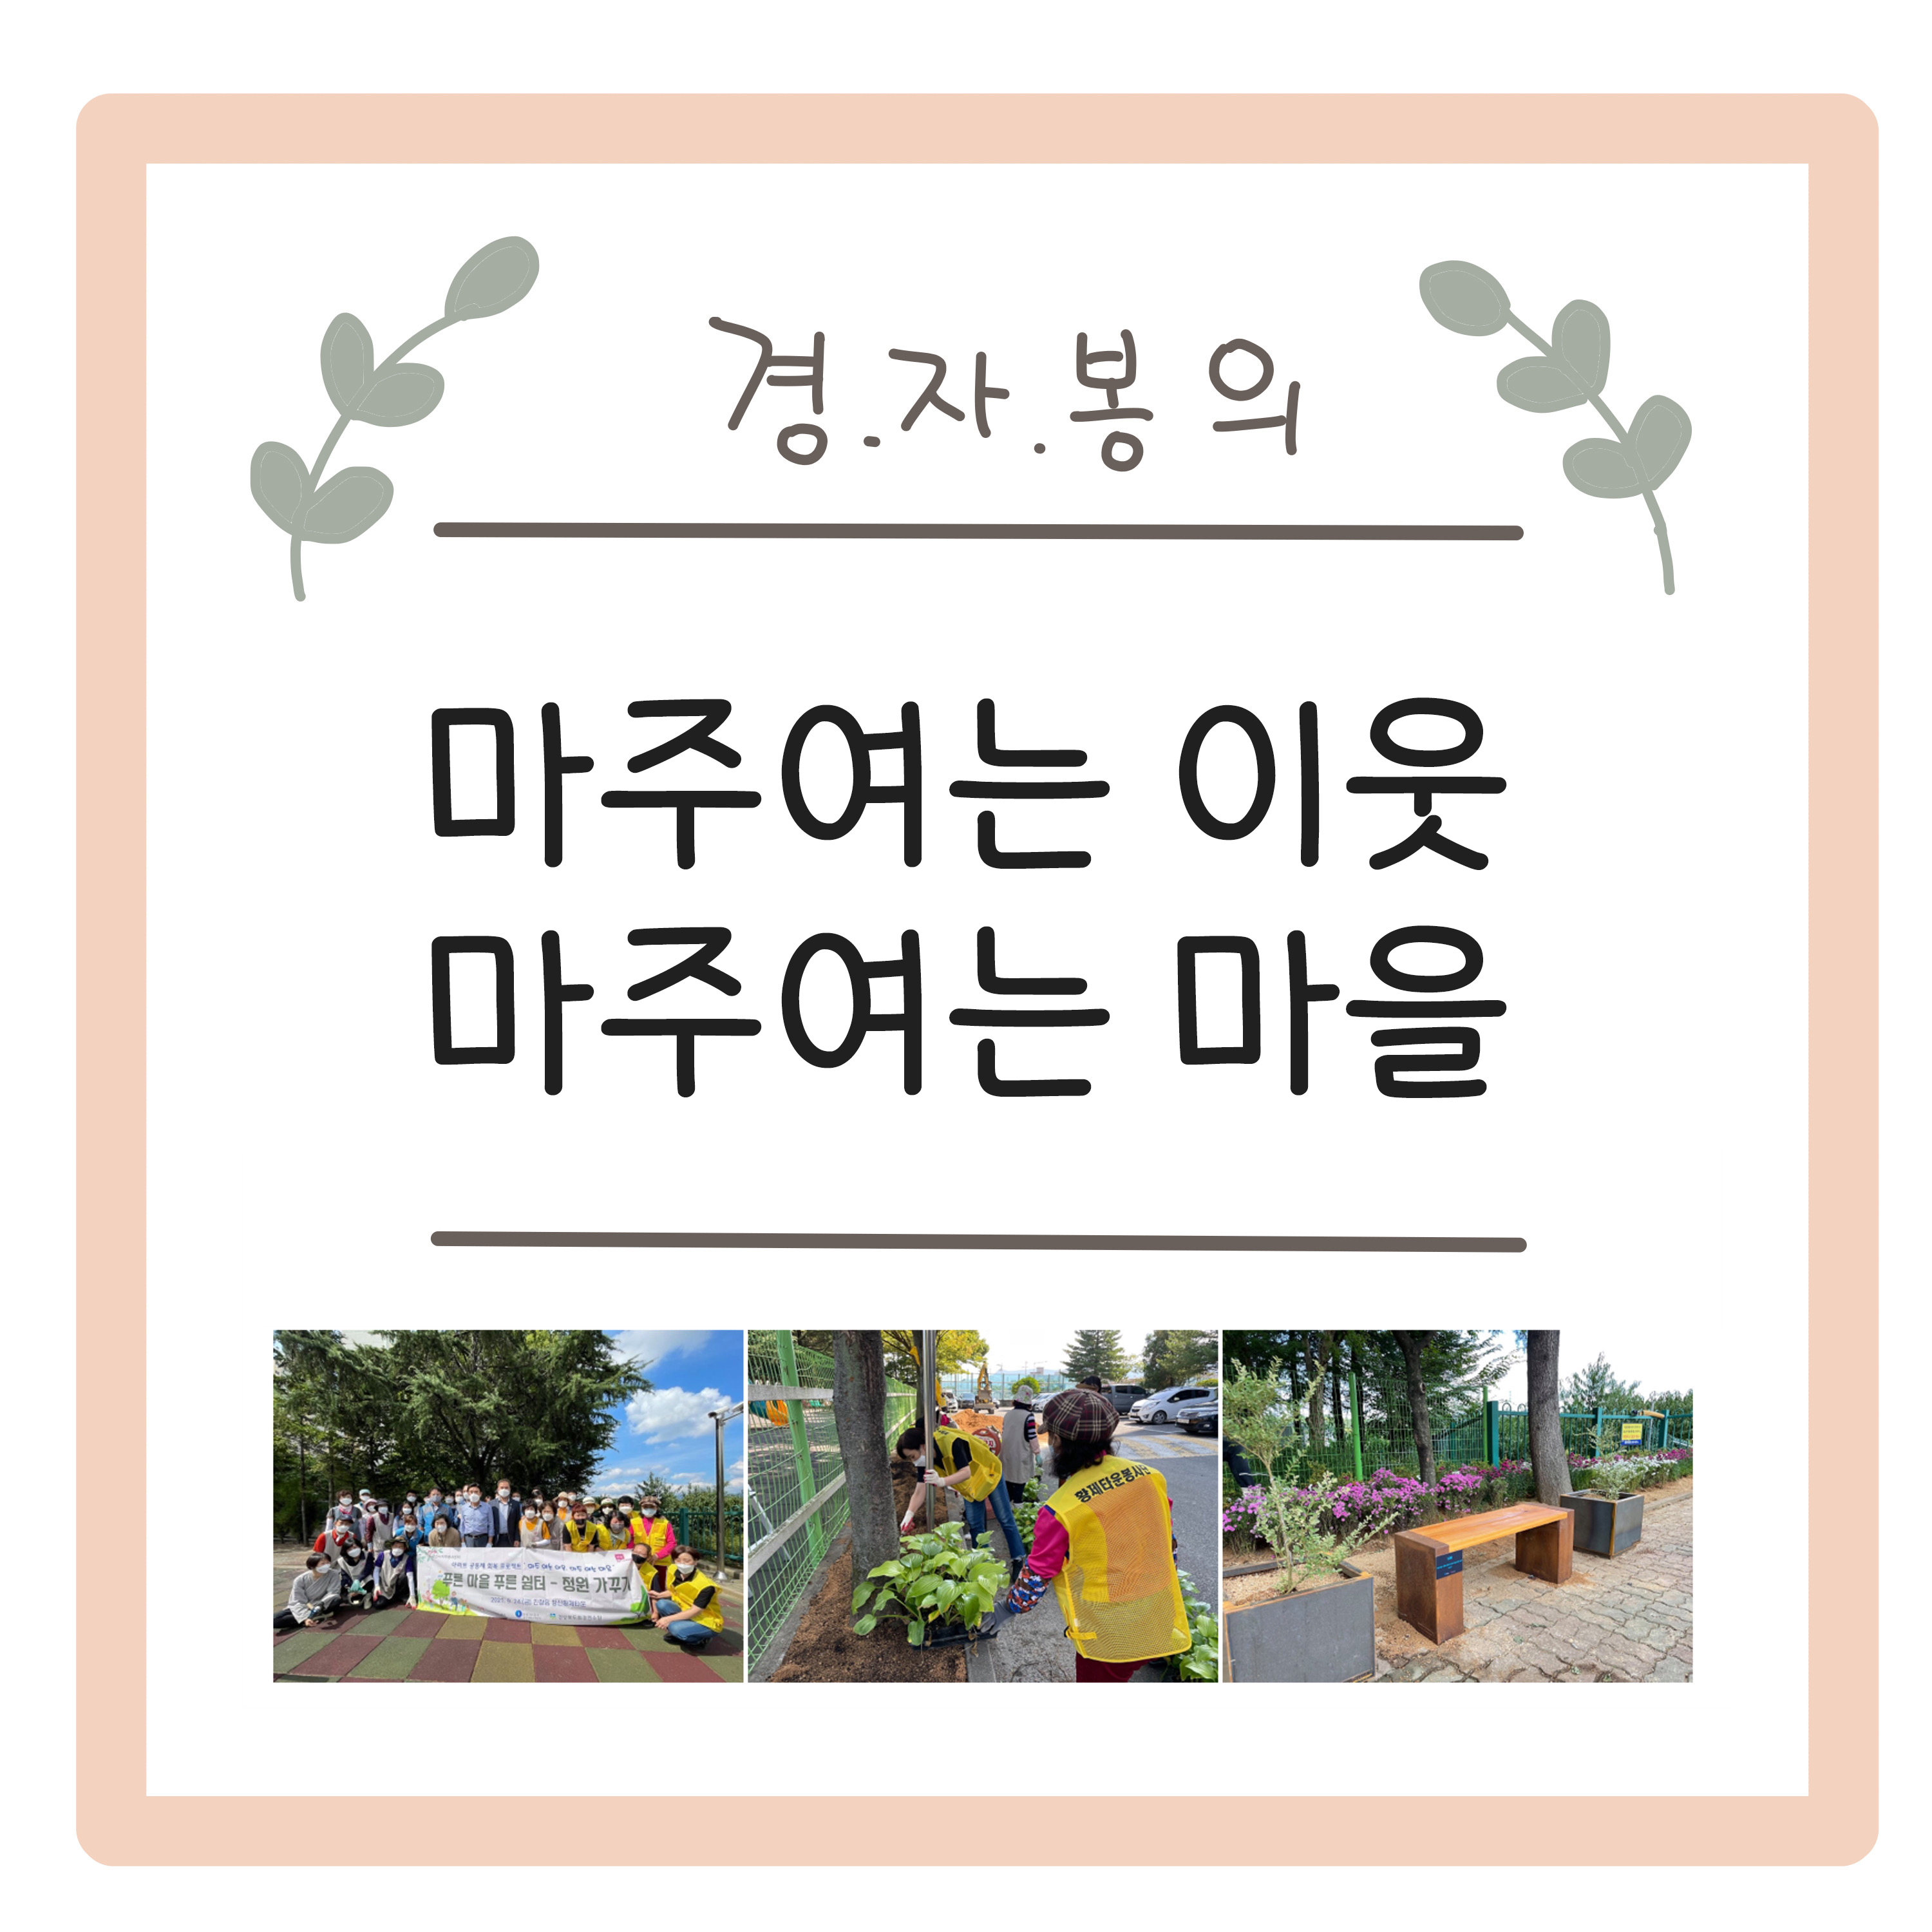 #4 방울(김영) 작가님과 함께하는  자원봉사센터의 발자취